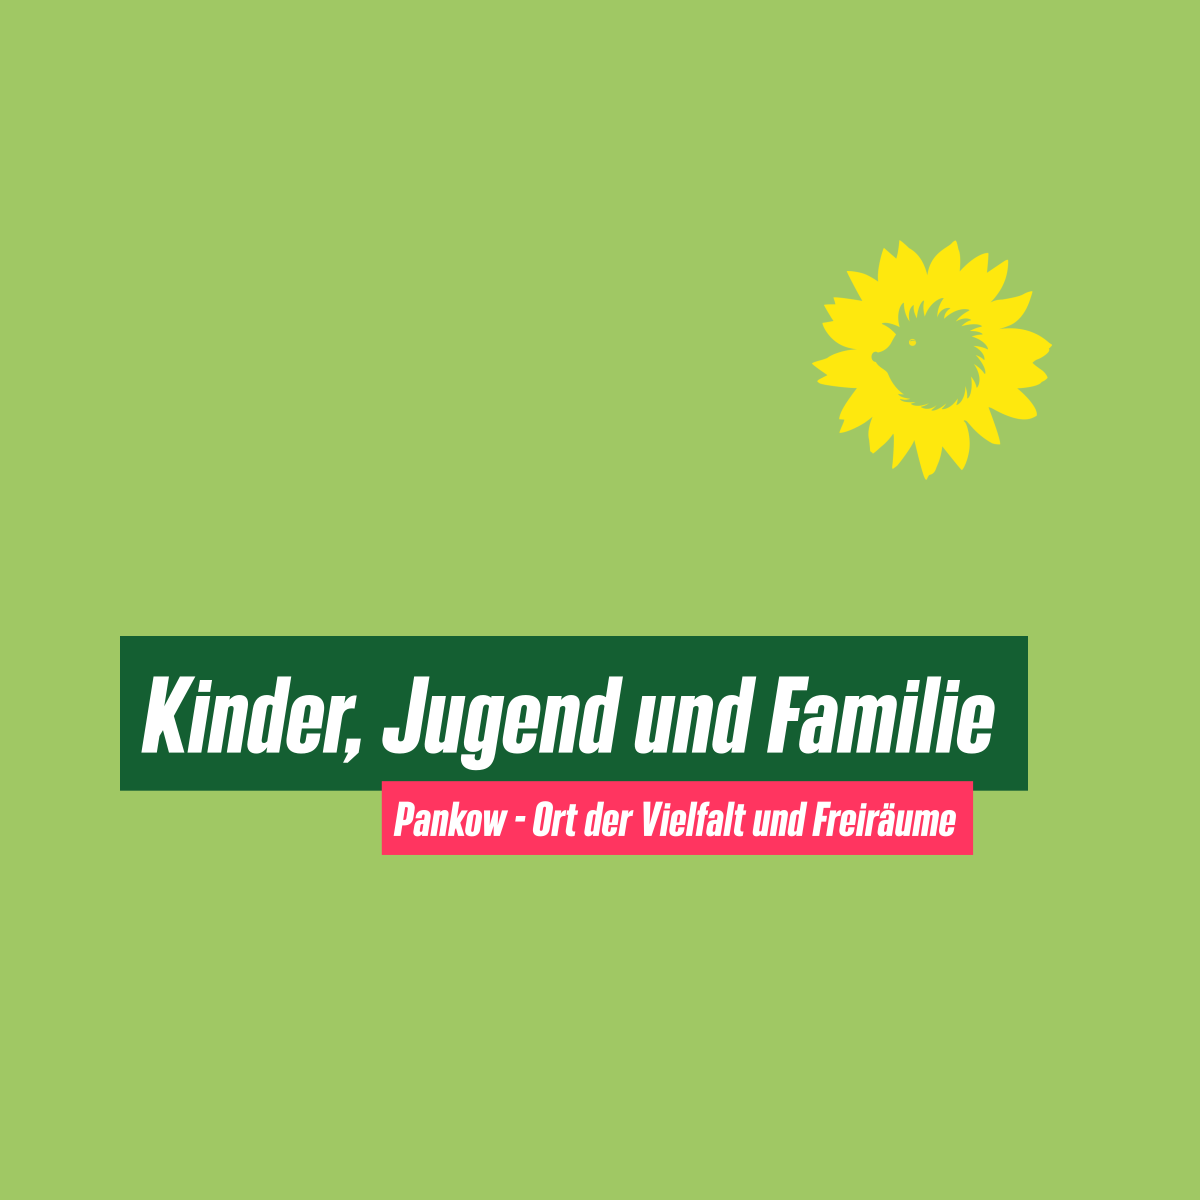 Text: "Kinder, Jugend und Familie"